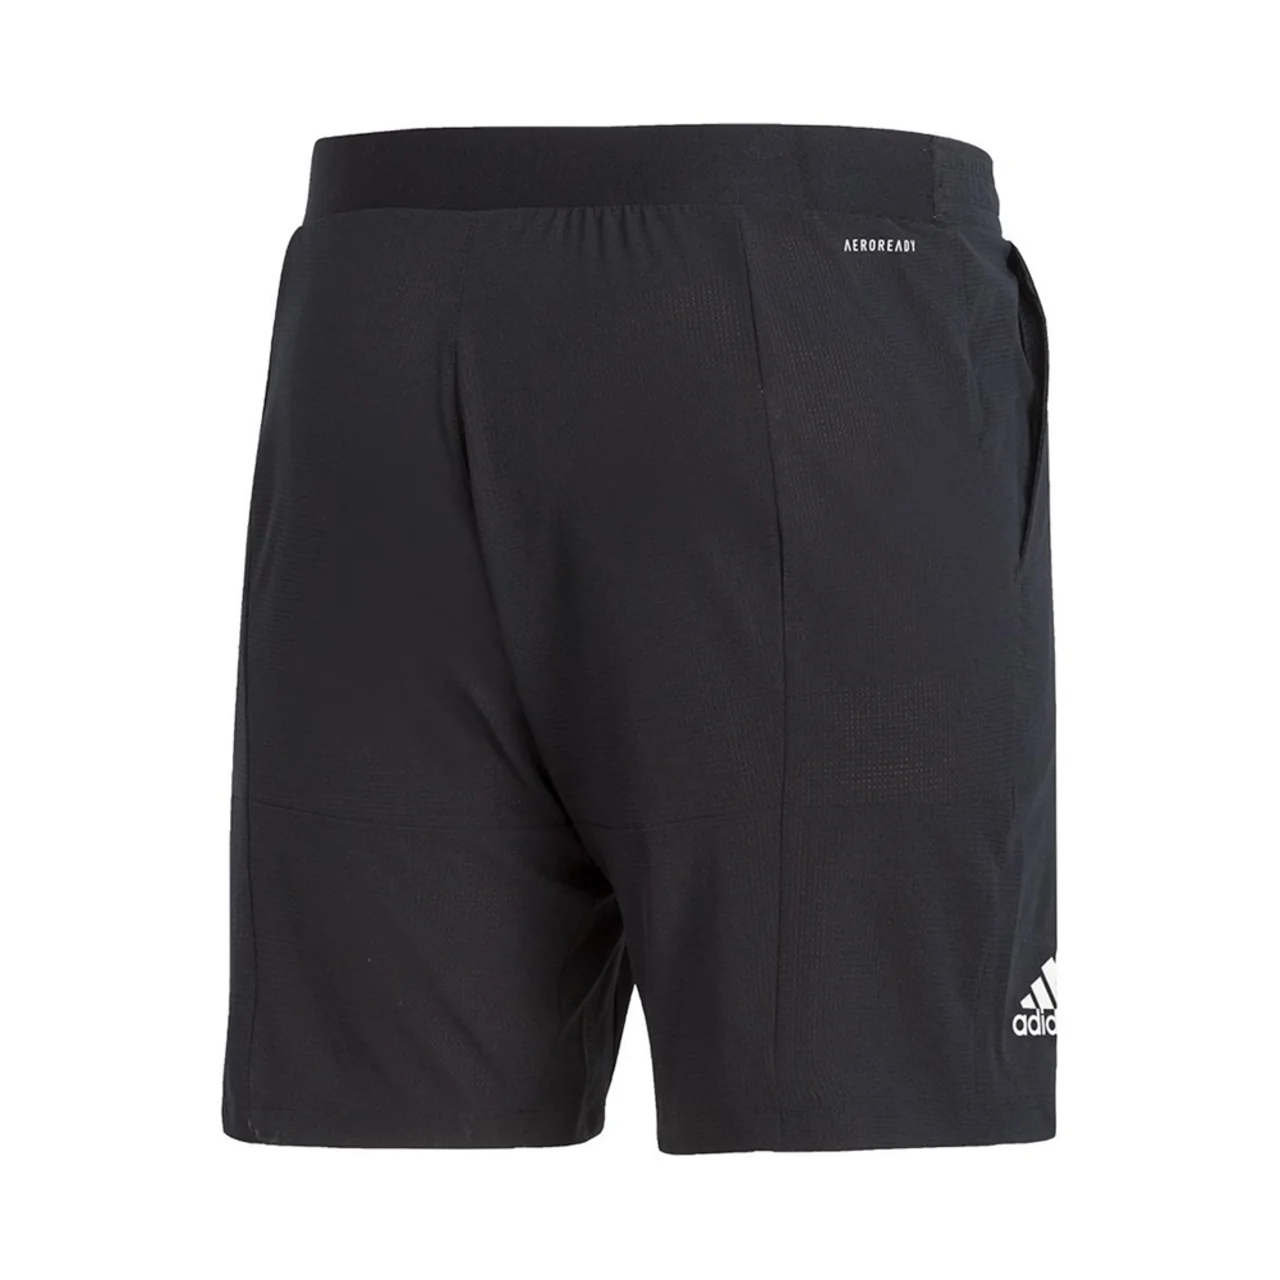 Adidas Ergo Shorts Black Size L